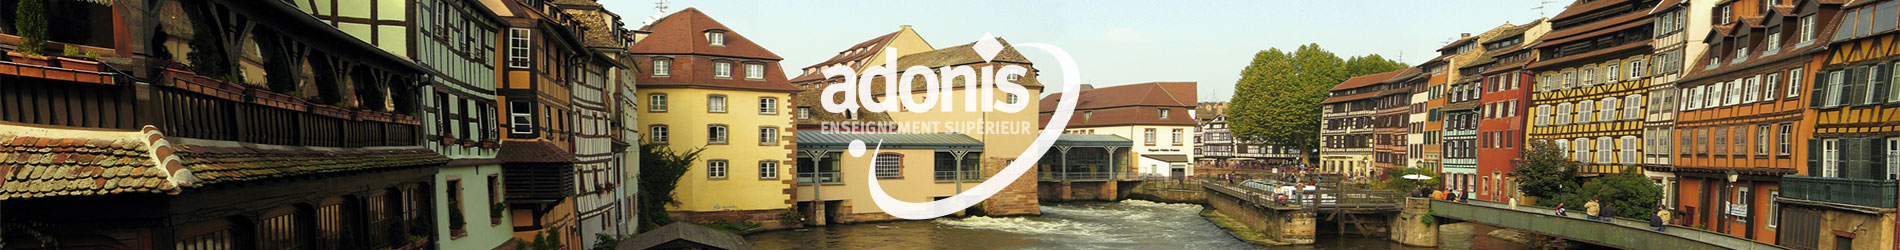 Bandeau école Adonis Aix-en-Provence